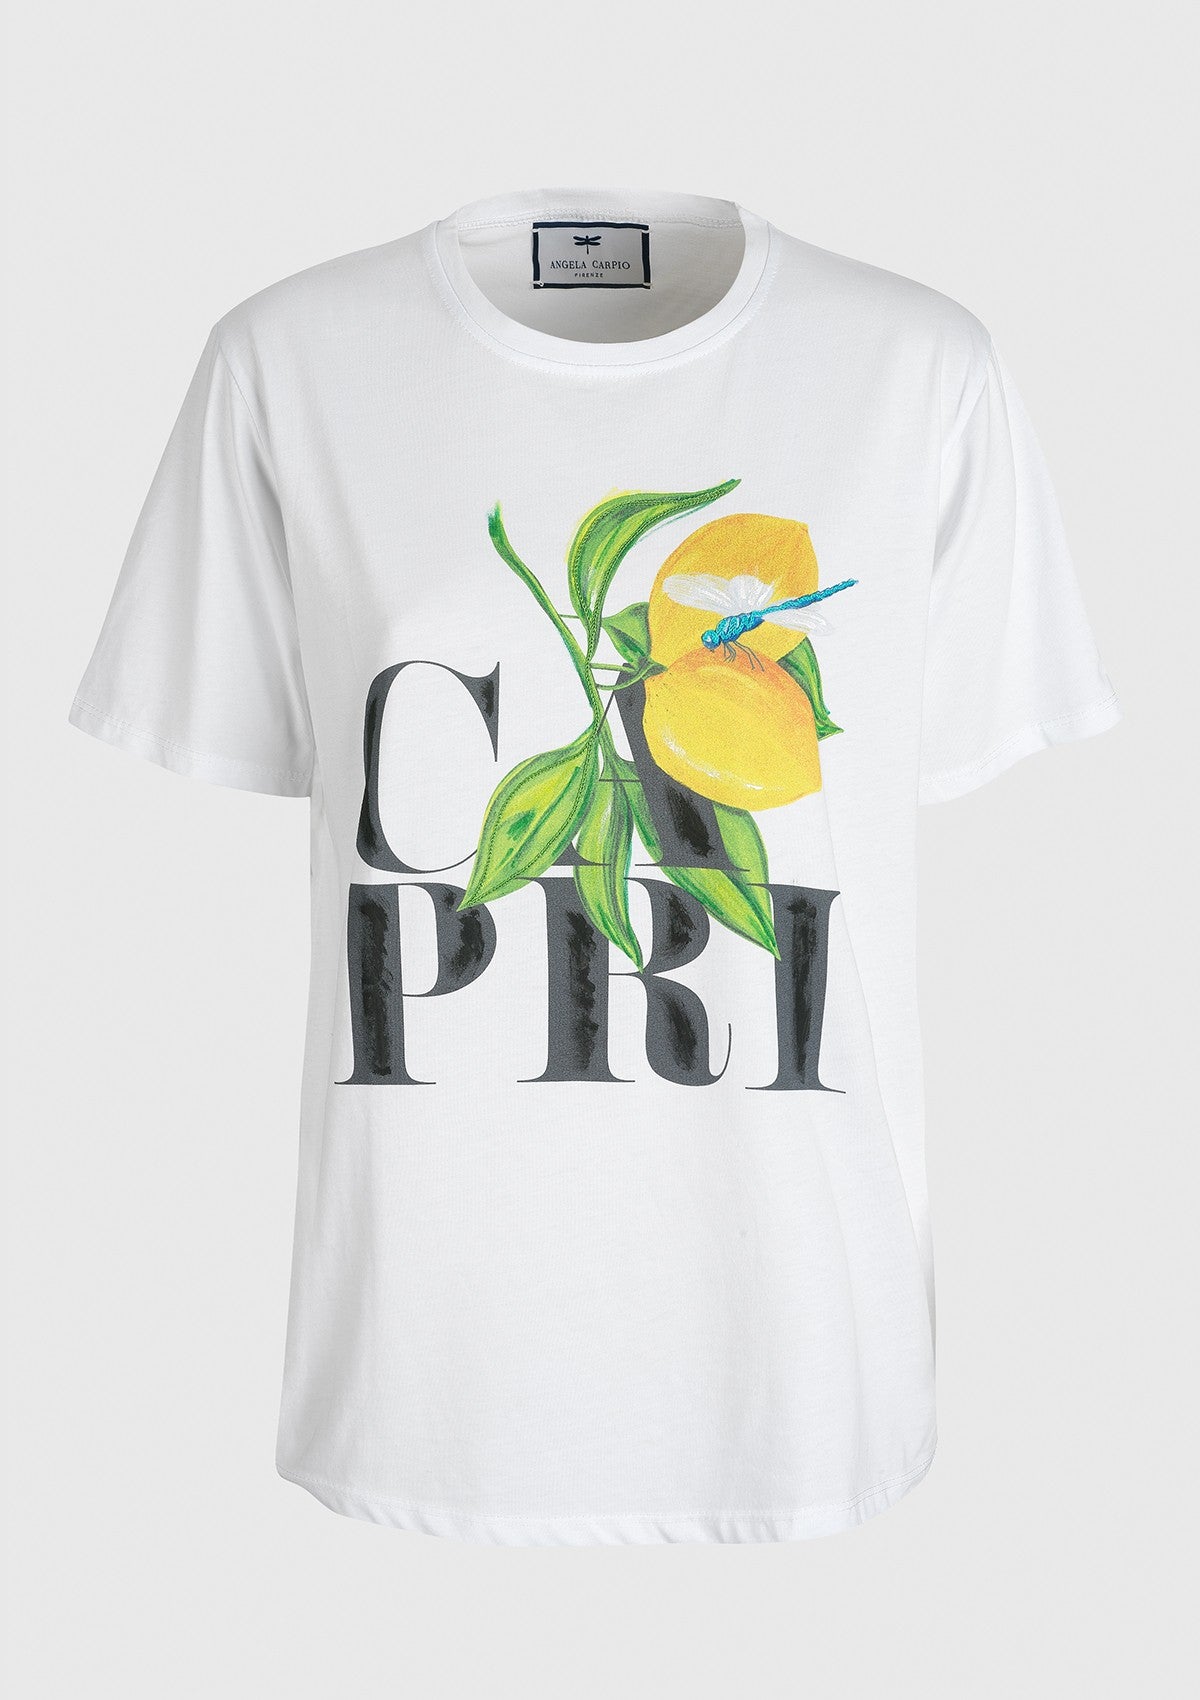 Tshirt Capri